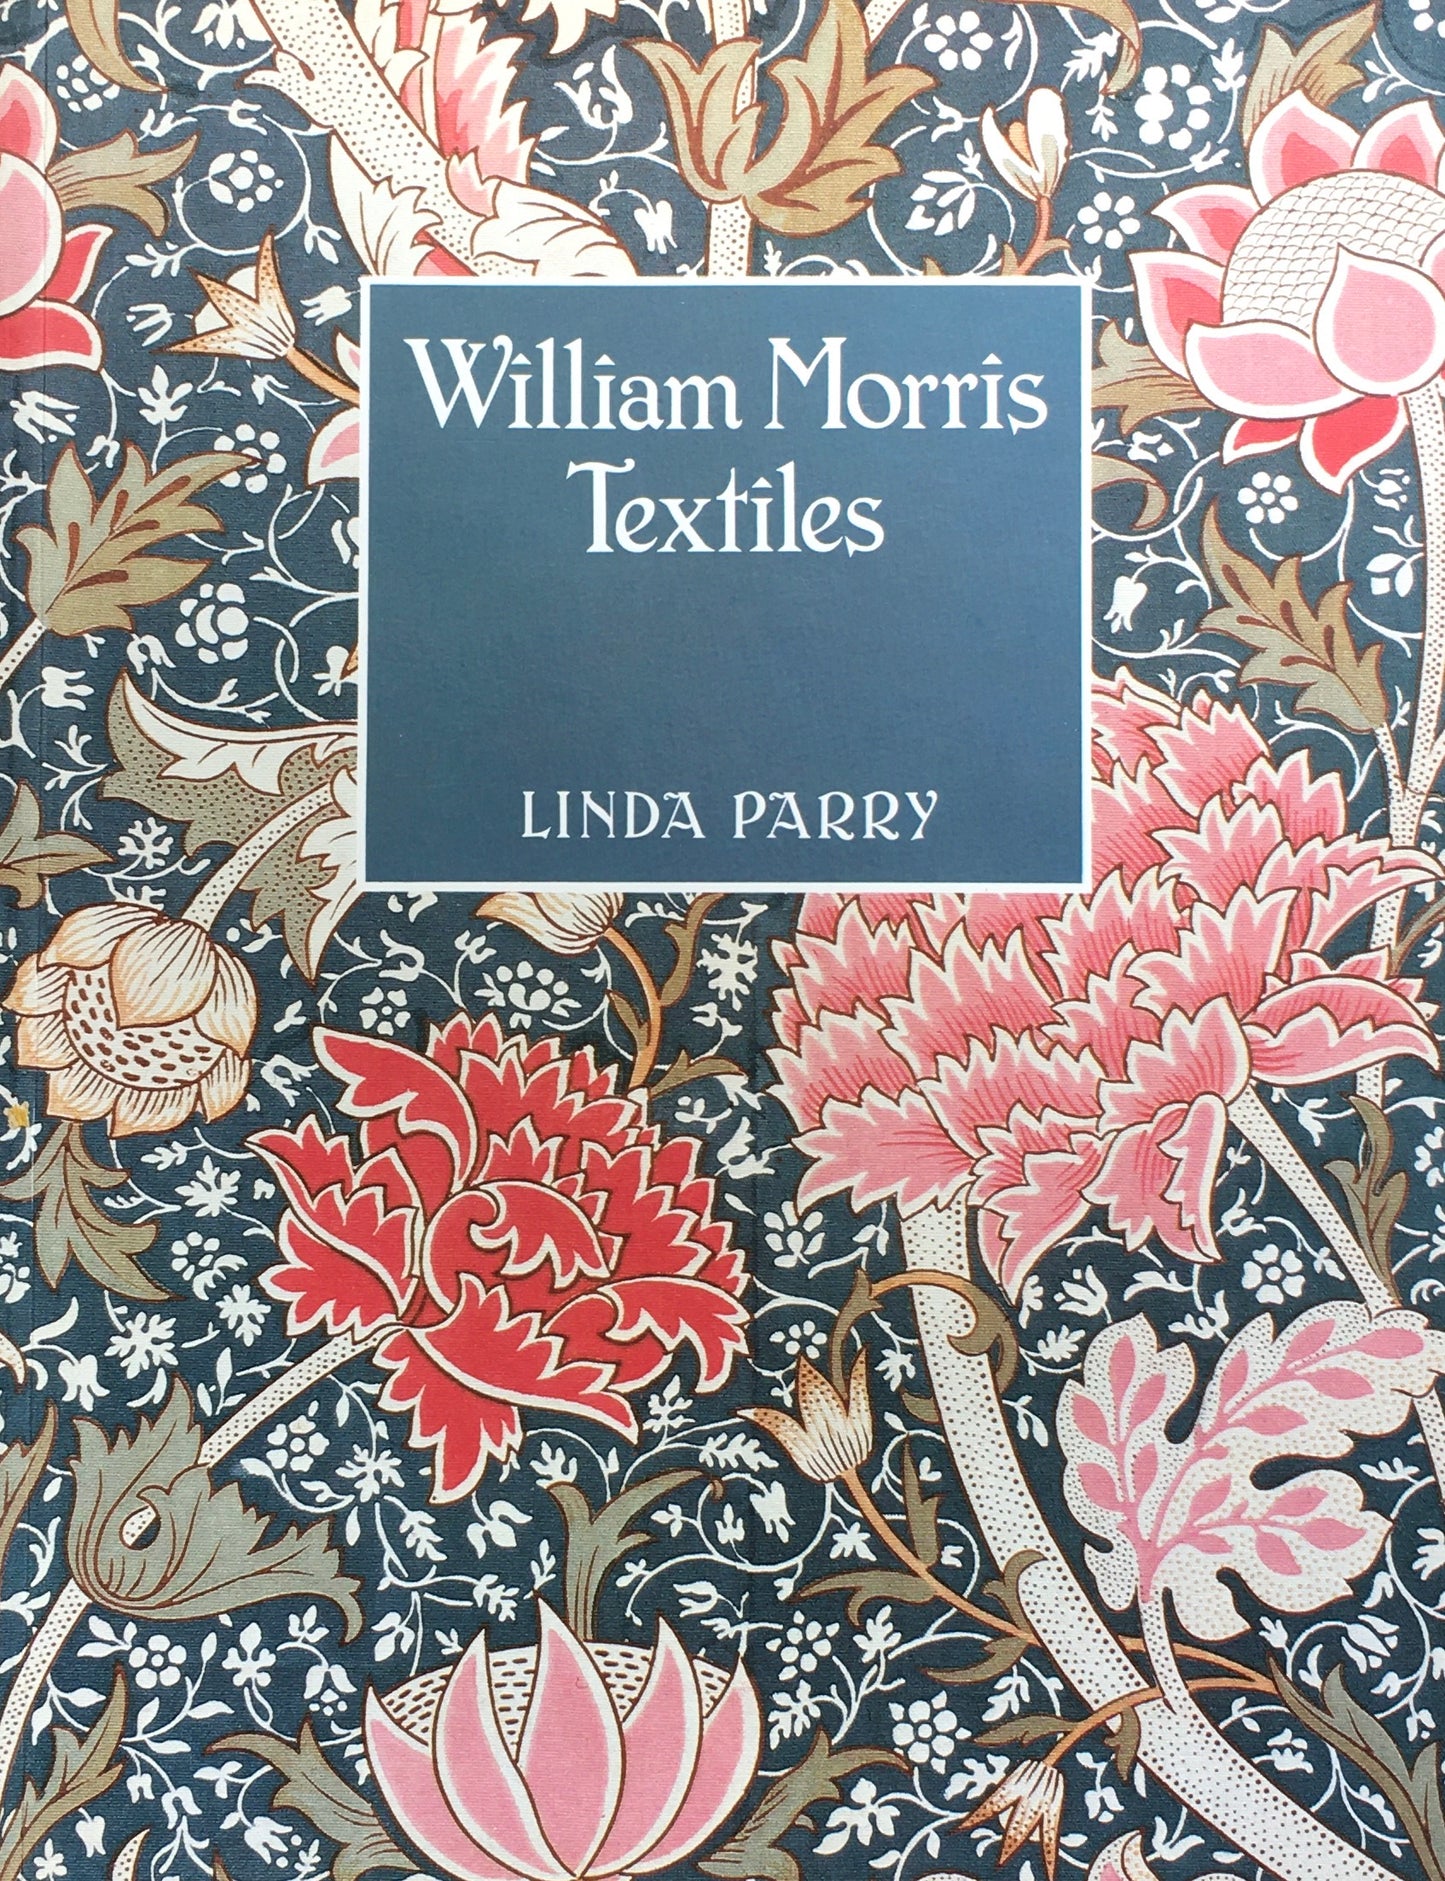 William Morris Textiles　Linda Parry 